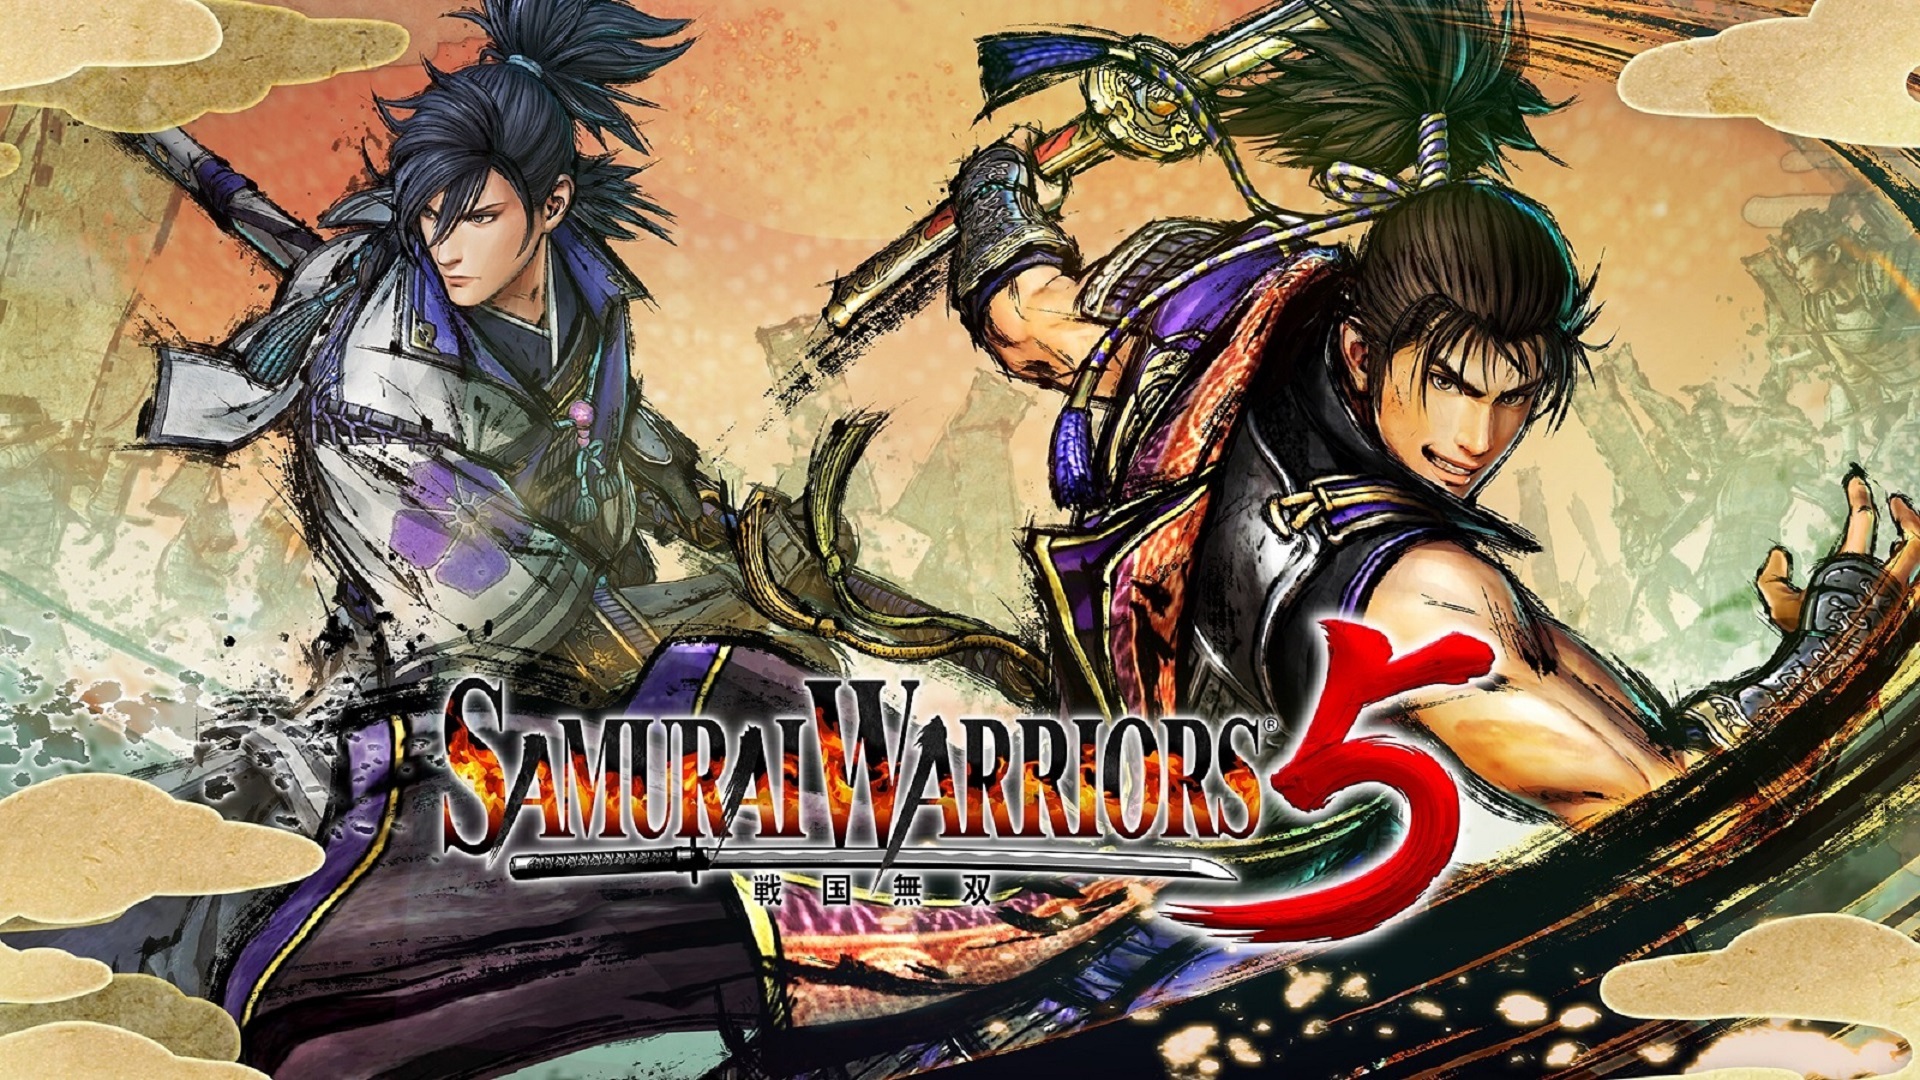 Războinici samurai 5